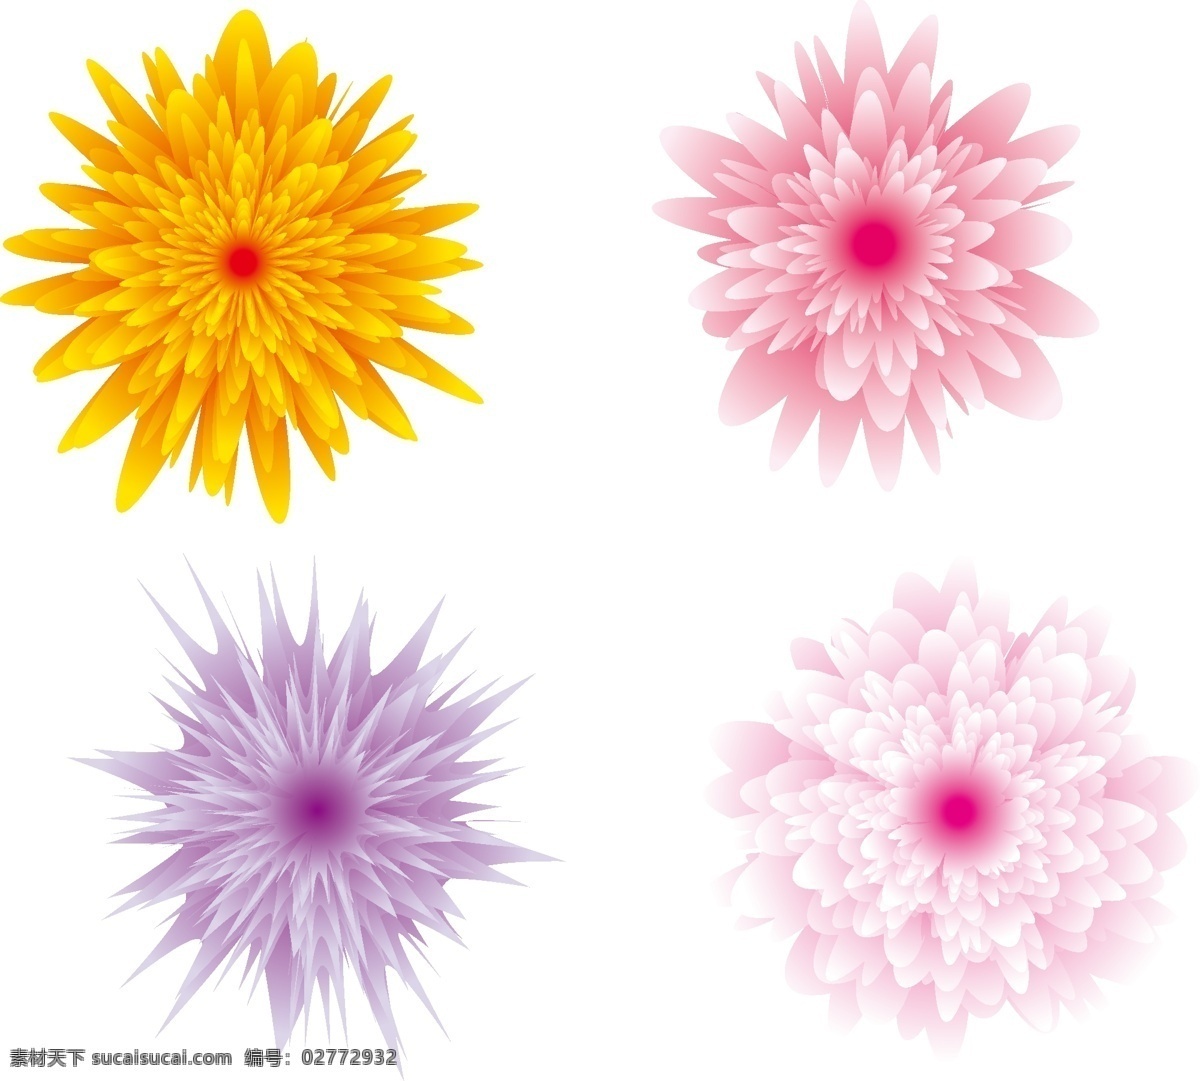 矢量花朵 矢量 花朵 模板下载 梦幻 背景 美丽 优雅 紫色 花的矢量素材 花纹花边 底纹边框 花草 生物世界